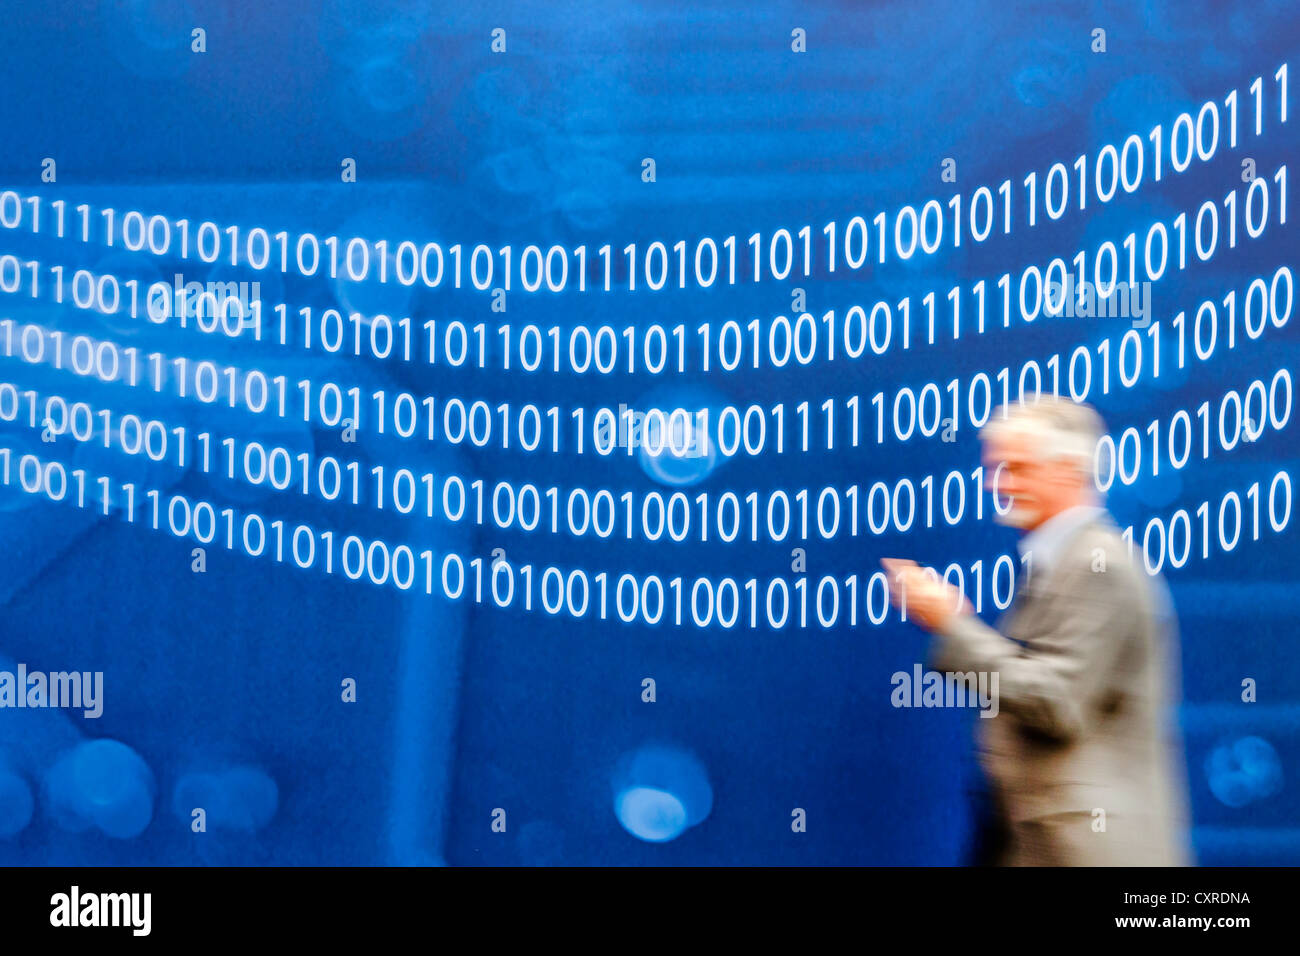 L'homme en passant devant un mur avec des nombres binaires, code binaire, les nombres 0 et 1, le CeBIT, Hanovre expo informatique international Banque D'Images